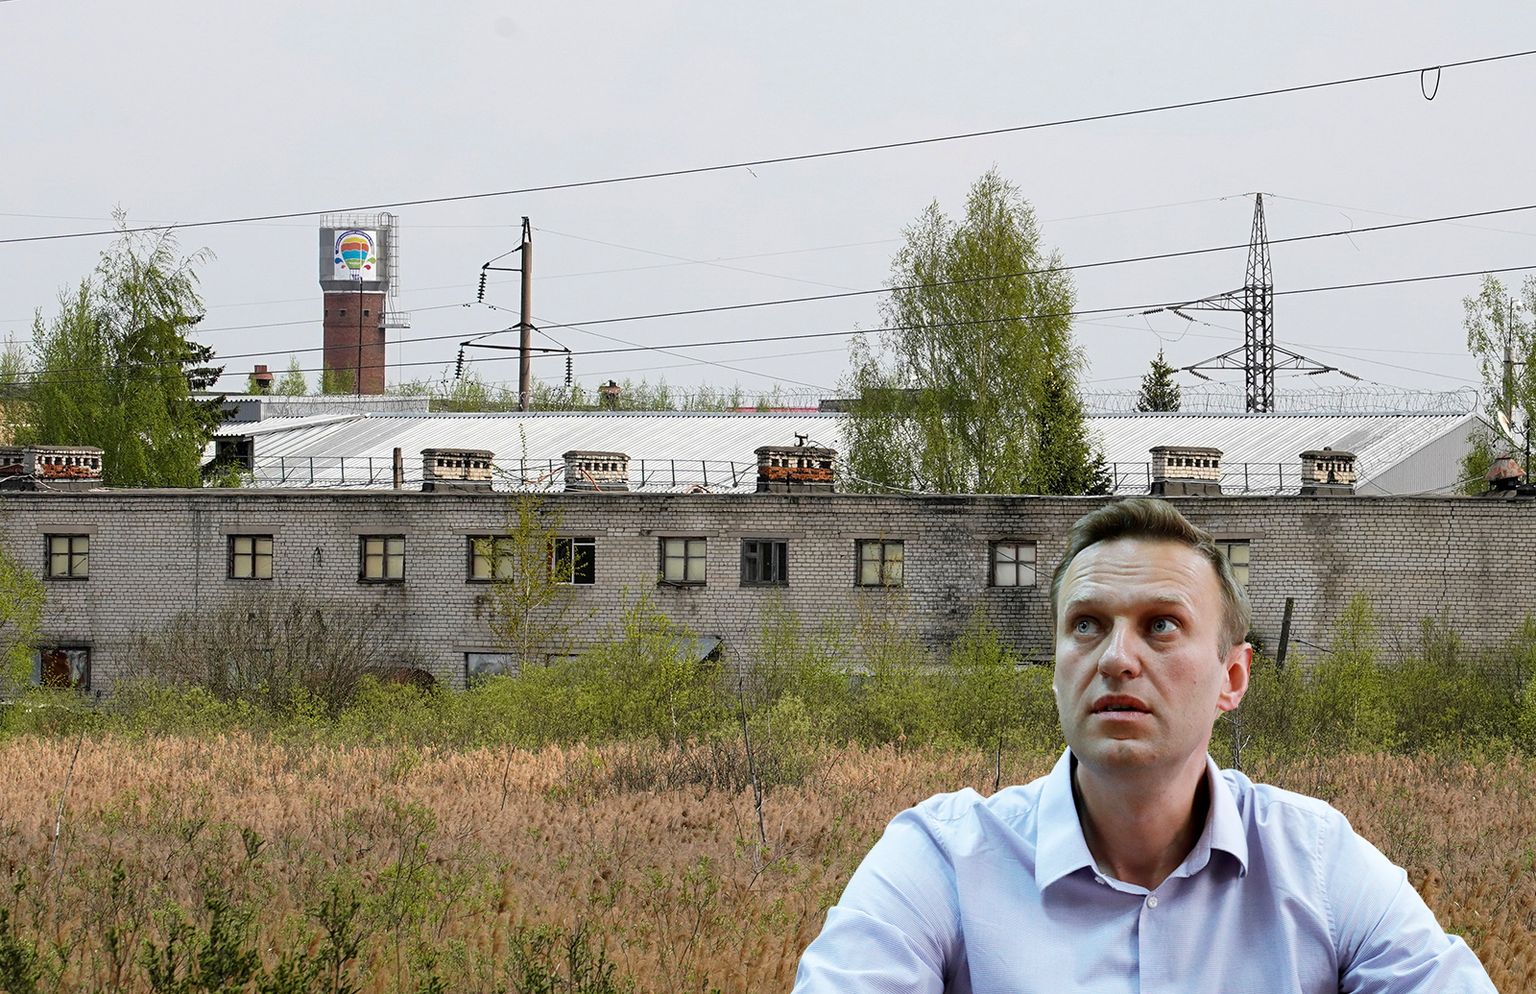 Колония в Покрове, где отбывает наказание Алексей Навальный